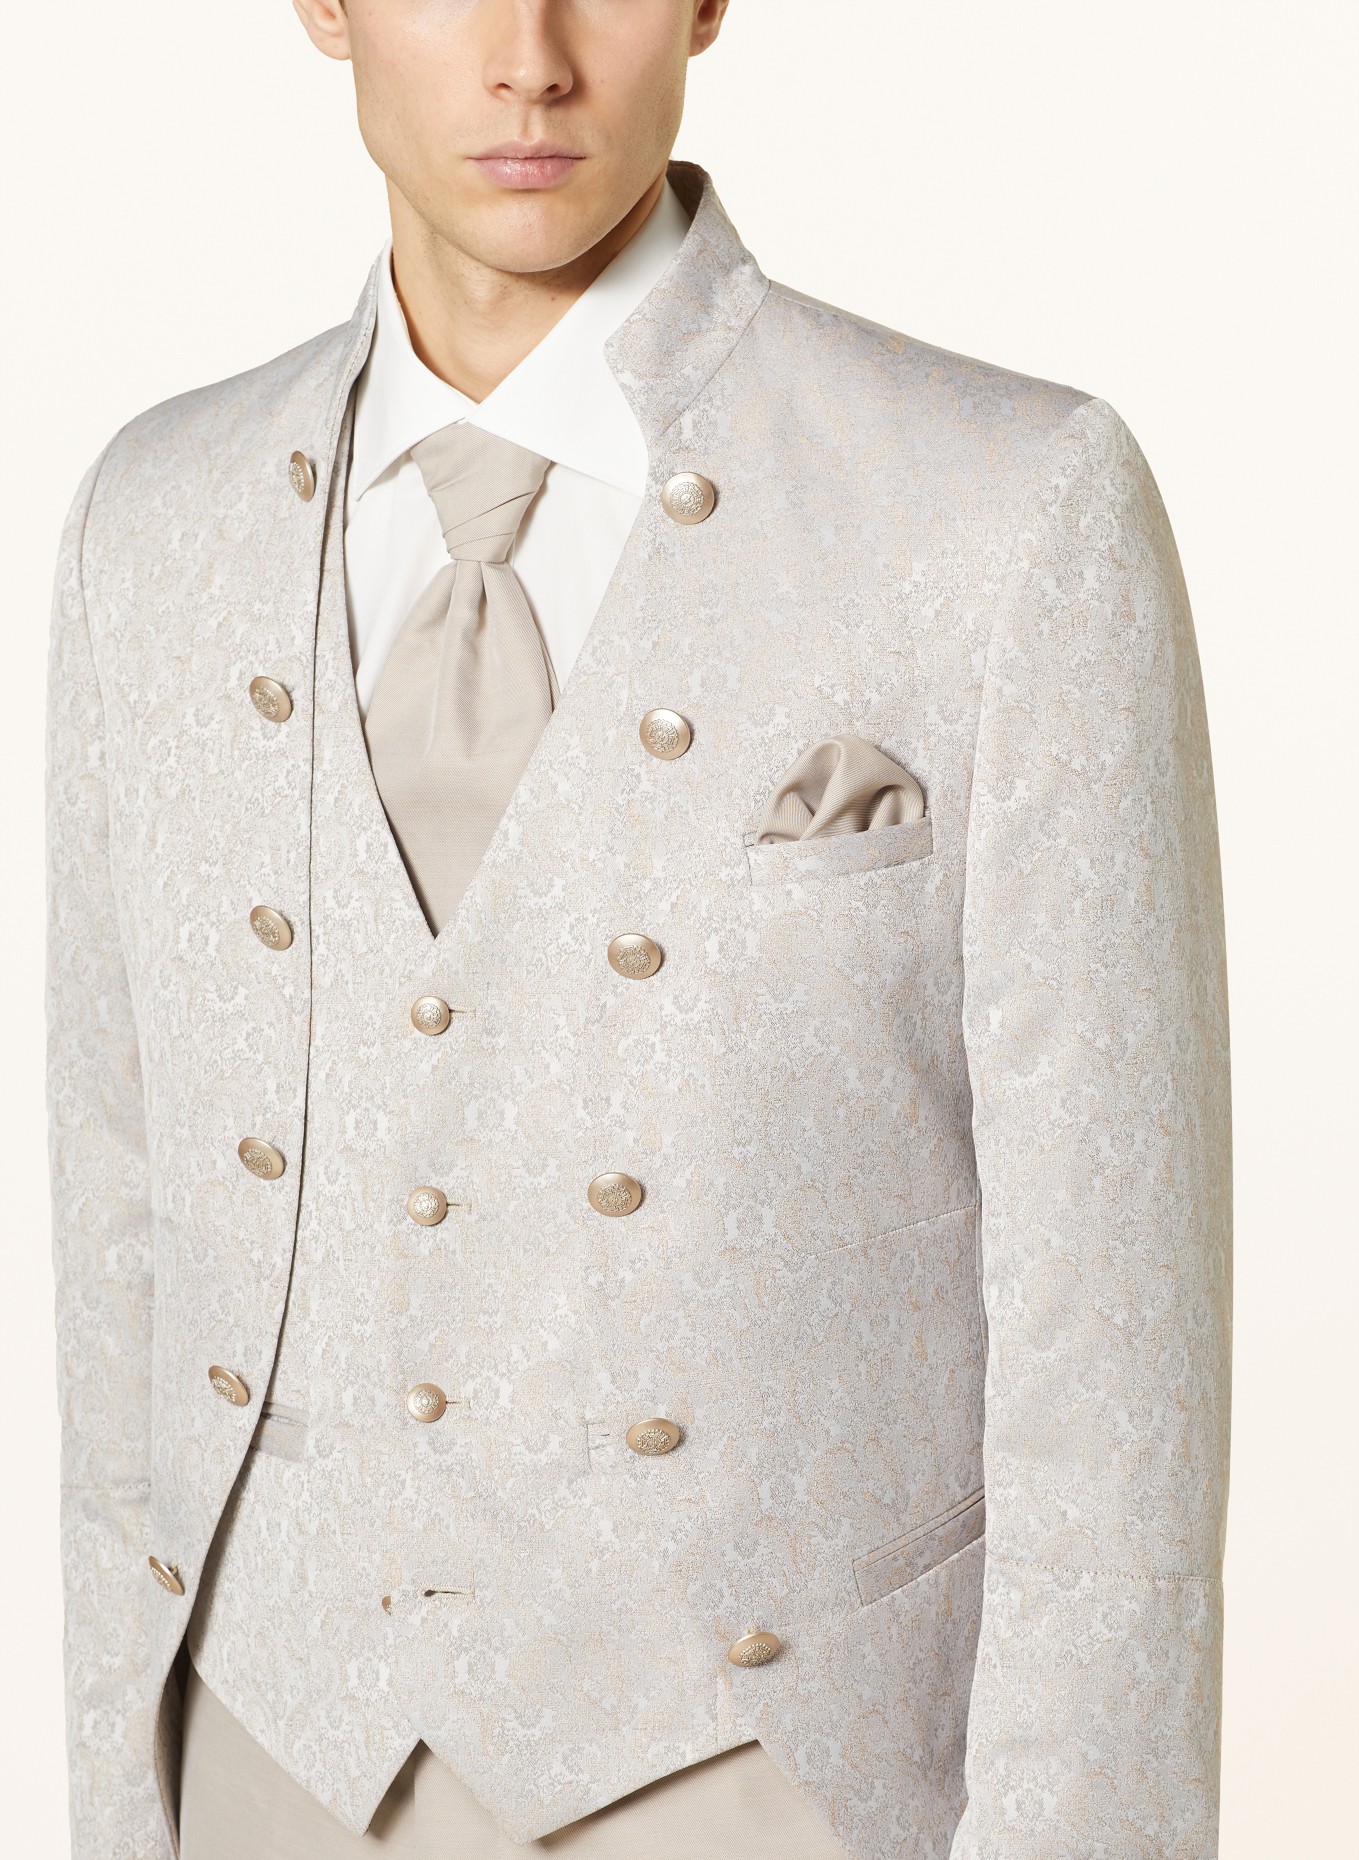 WILVORST Tailored jacket extra slim fit, Color: 083 Beige gem. (Image 5)